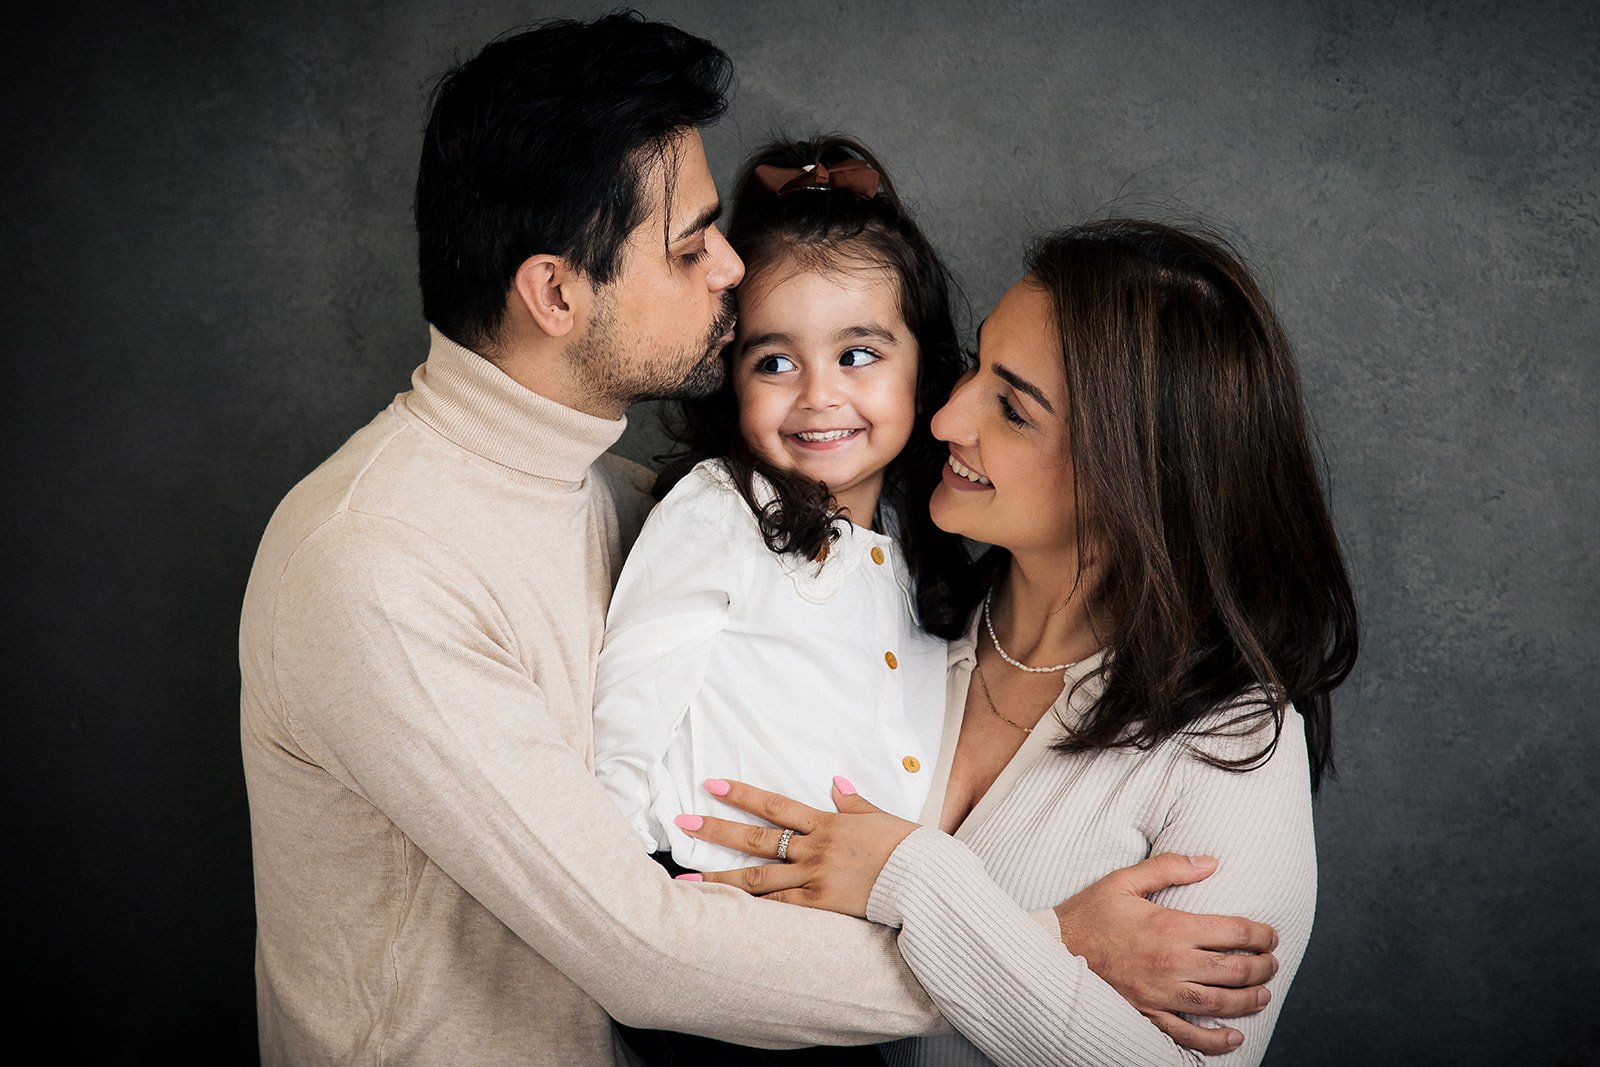 aalborg-familiefotografering---en-smilende-arabisk-familie-på-billedet_pt(7863351539).jpeg